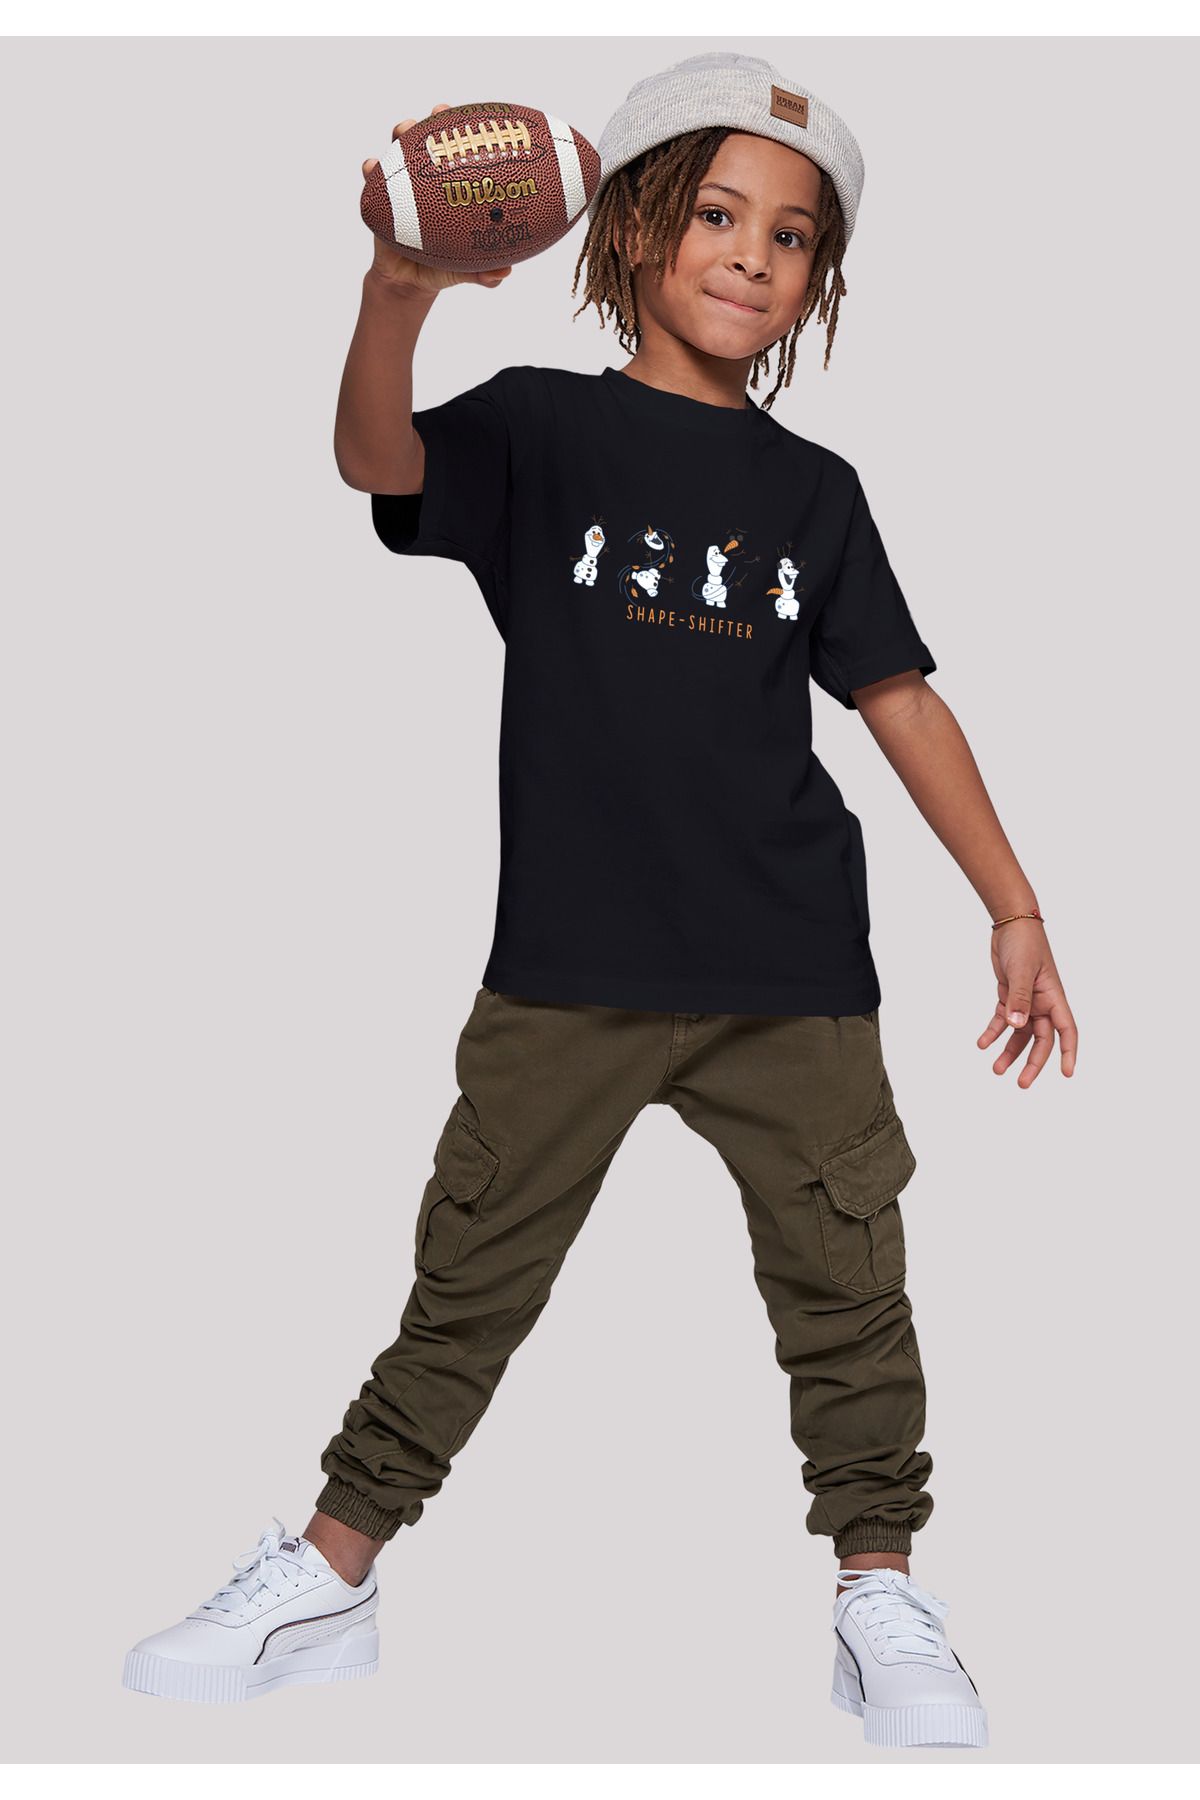 Shape-Shifter Trendyol Frozen - Kinder Kids F4NT4STIC 2 mit Basic Disney T-Shirt Olaf